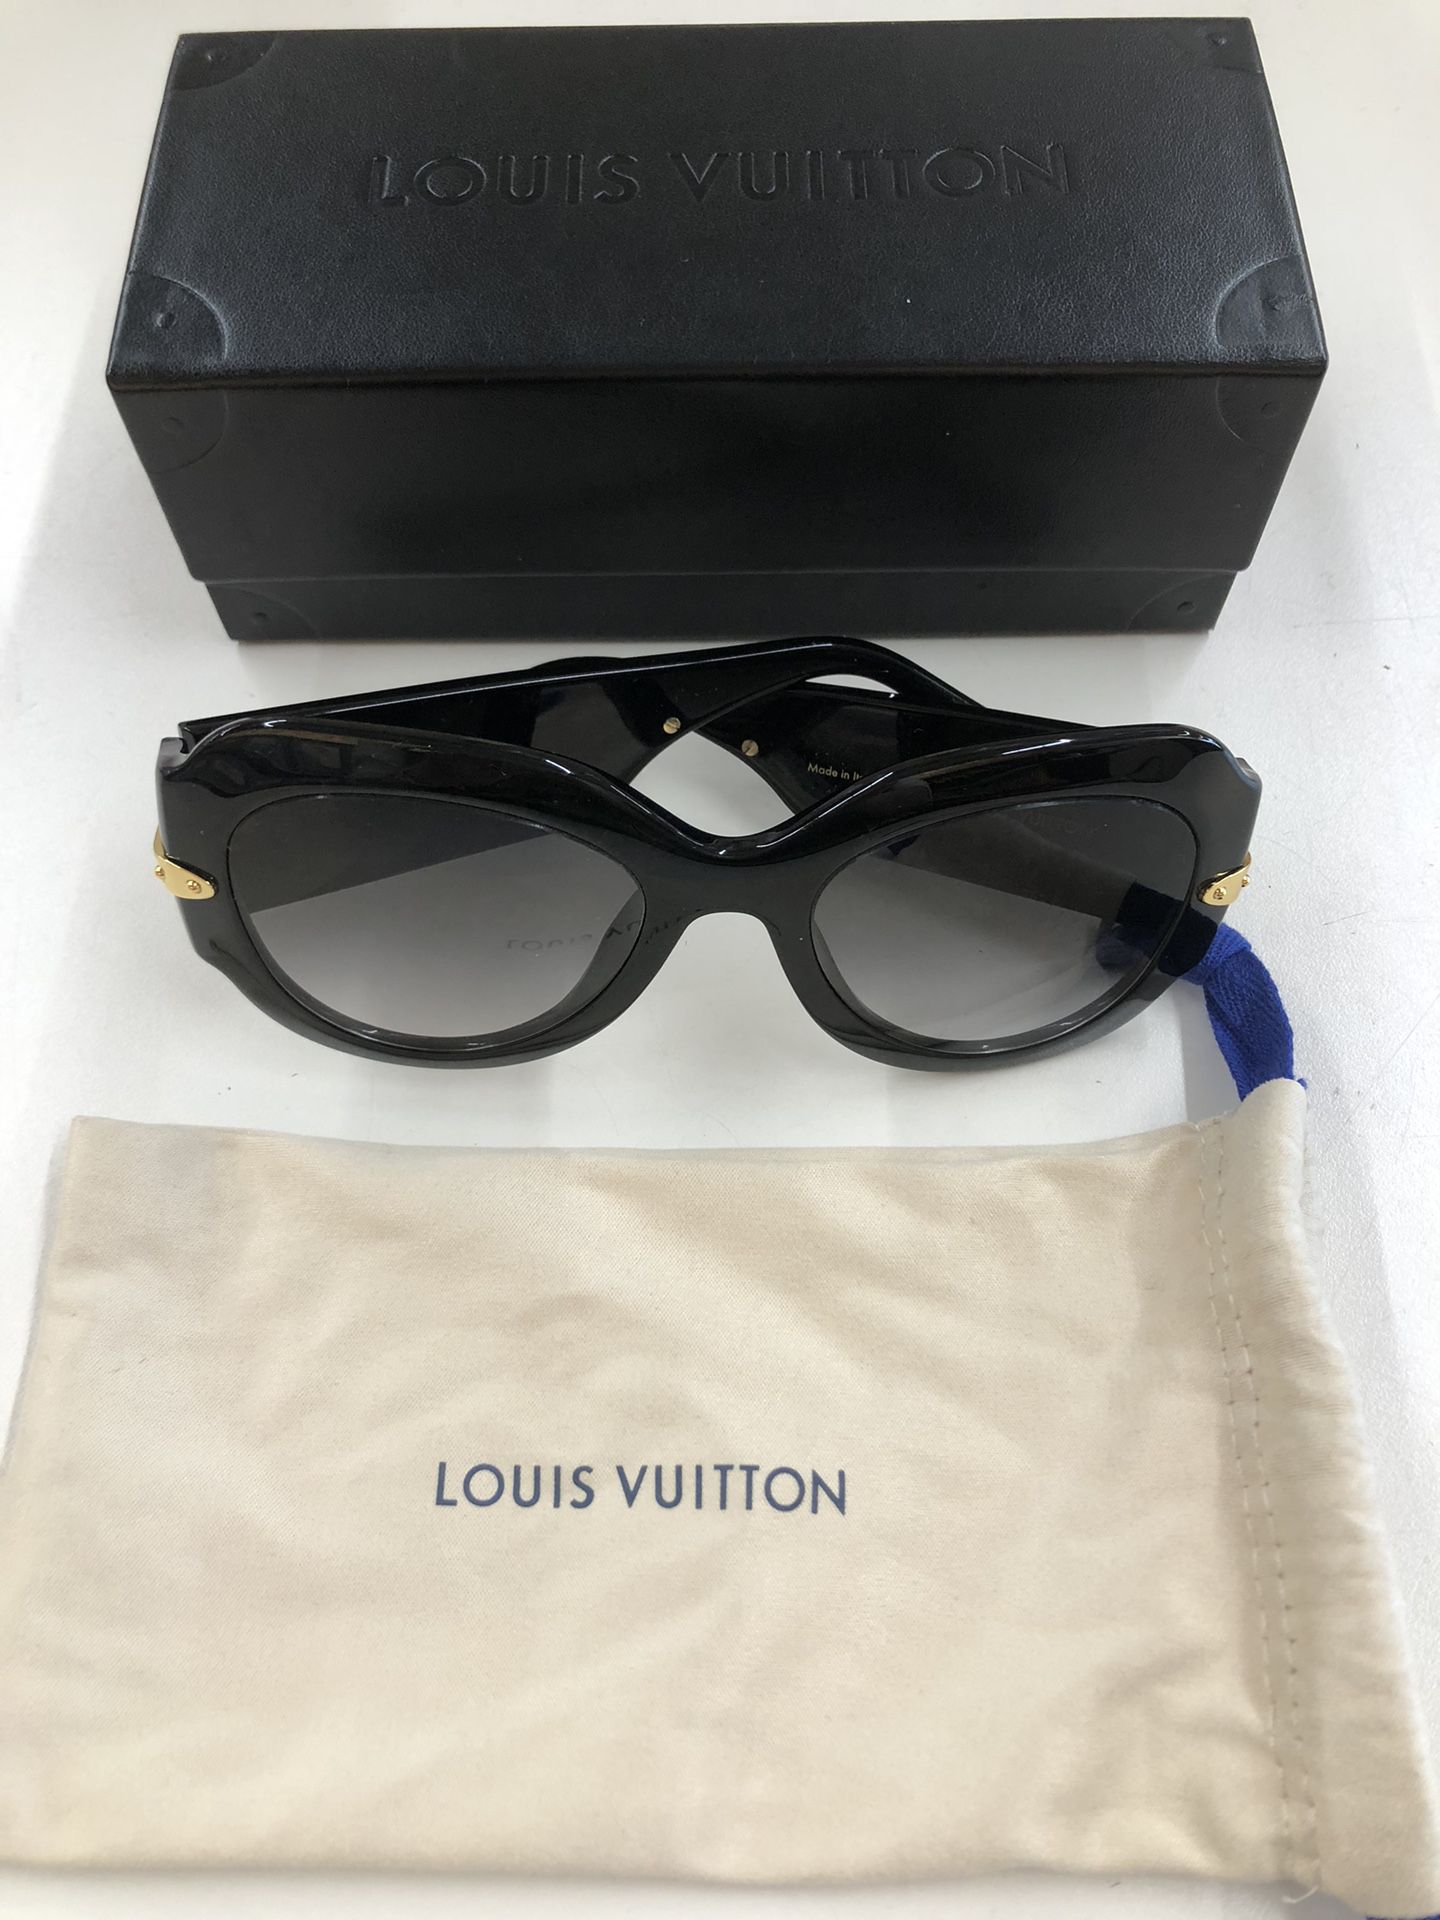 LOUIS VUITTON Sunglasses Z1132E Black